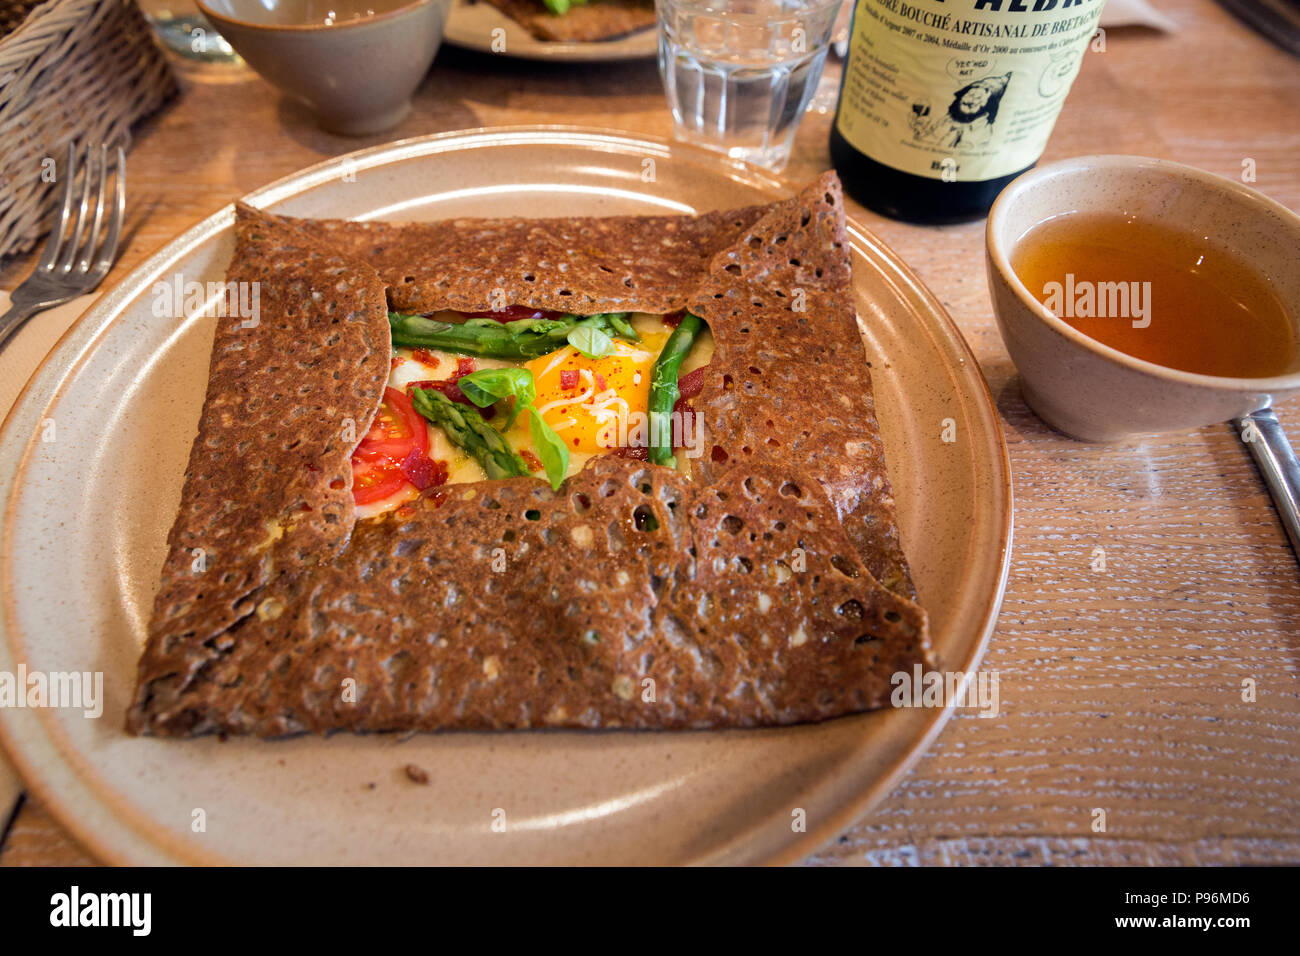 Un Breton grano saraceno galette riempito con verdure fresche e un uovo per pranzo a Parigi, Francia Foto Stock